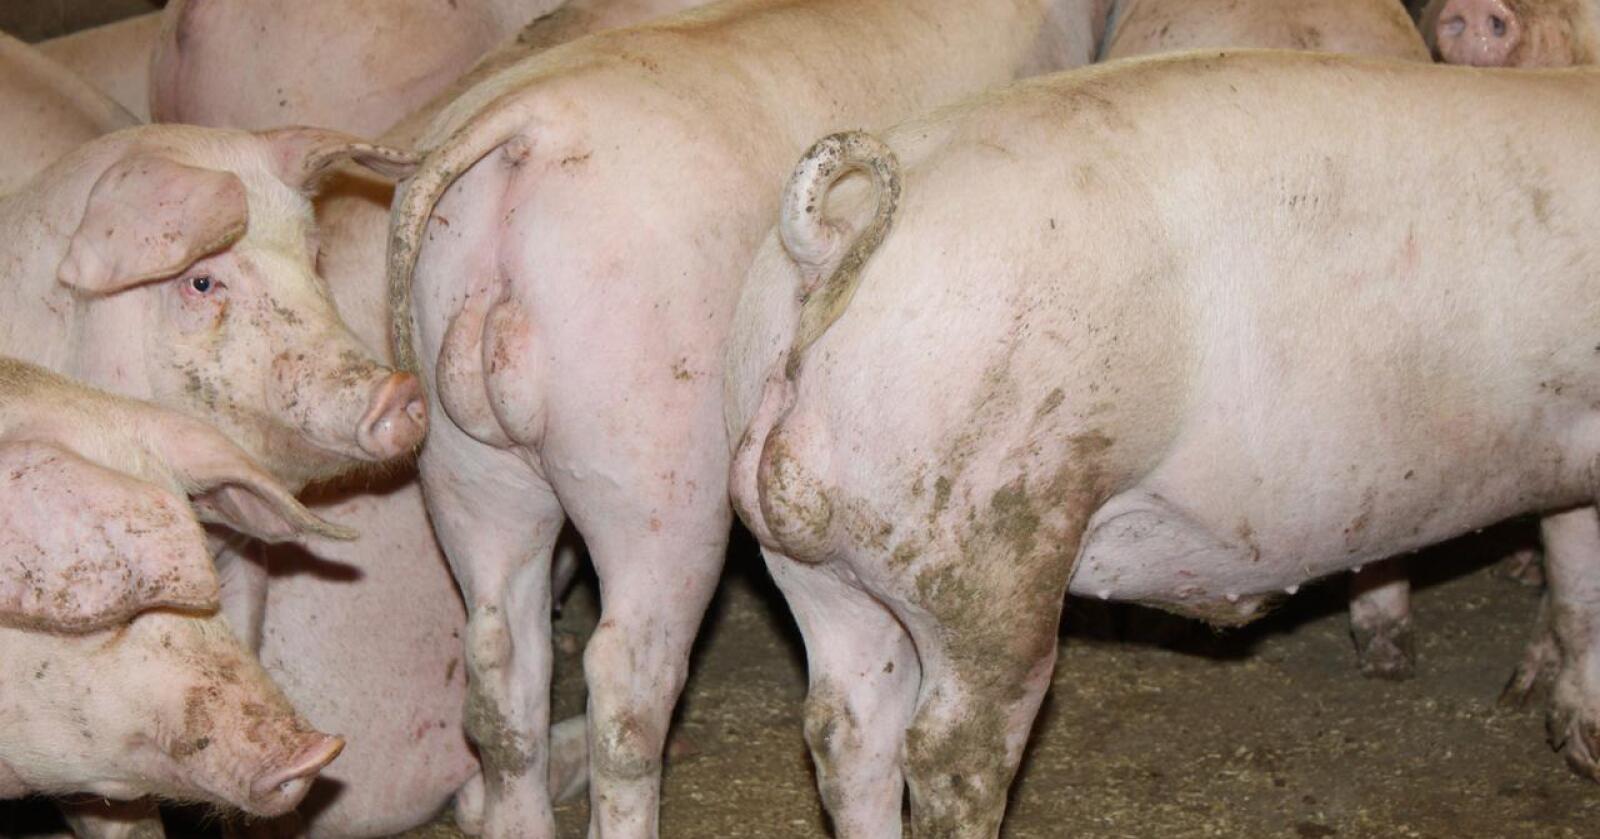 RÅNELUKT: Med bruk av genredigering kan snart amerikanske svineprodusenter ha griser som ikke må kastreres for å unngå rånelukt i kjøttet. Spørsmålet er om forbrukerne vil ha det. 